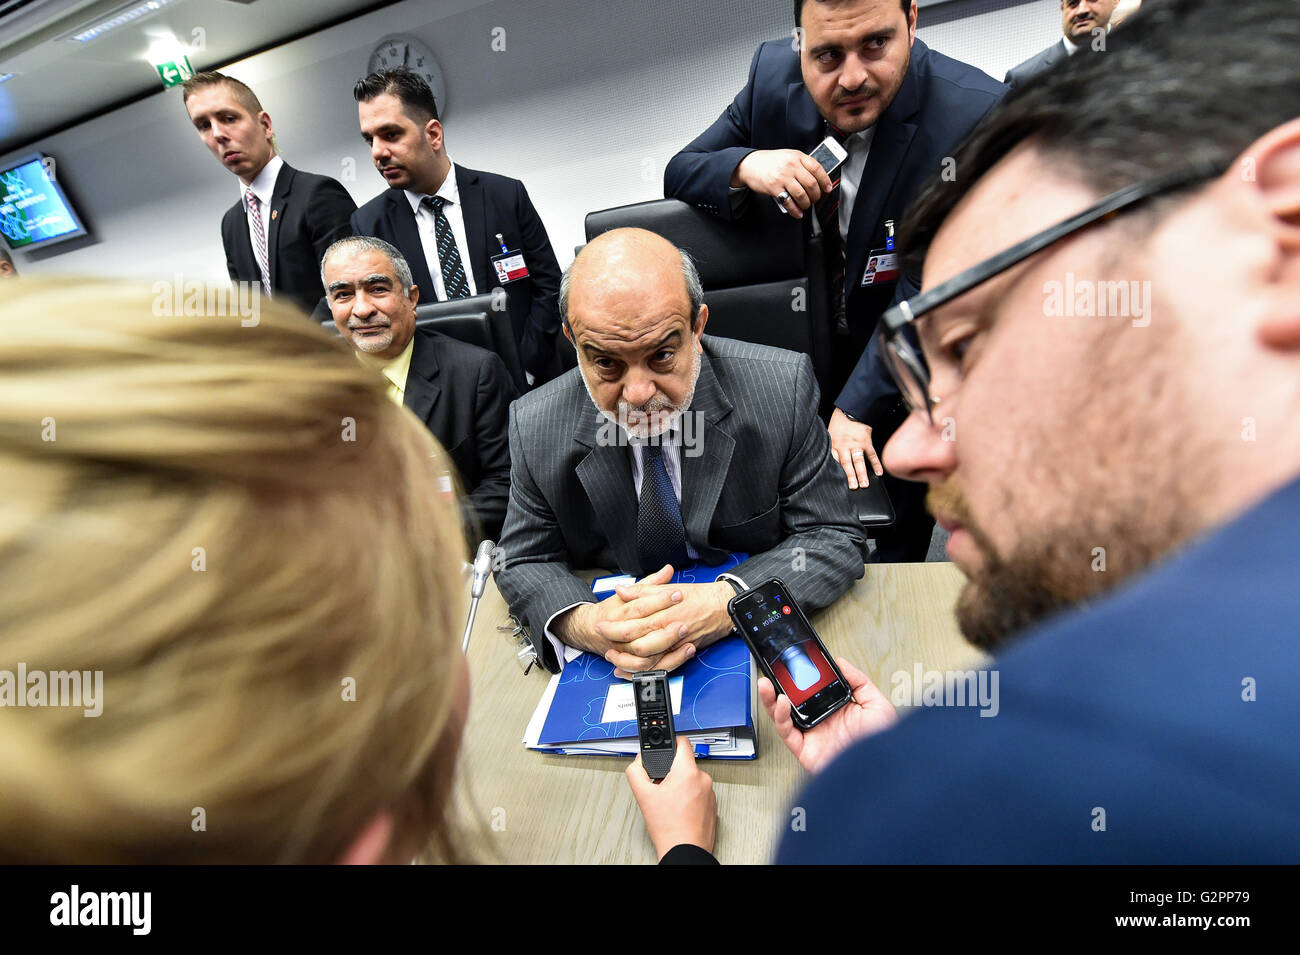 Viena, Austria. El 2 de junio de 2016. Ministro de petróleo iraquí Adil Abdul-Mahdi (C) recibe entrevistas antes de la 169ª reunión de la conferencia de la OPEP en Viena, capital de Austria, el 2 de junio de 2016. Crédito: Qian Yi/Xinhua/Alamy Live News Foto de stock